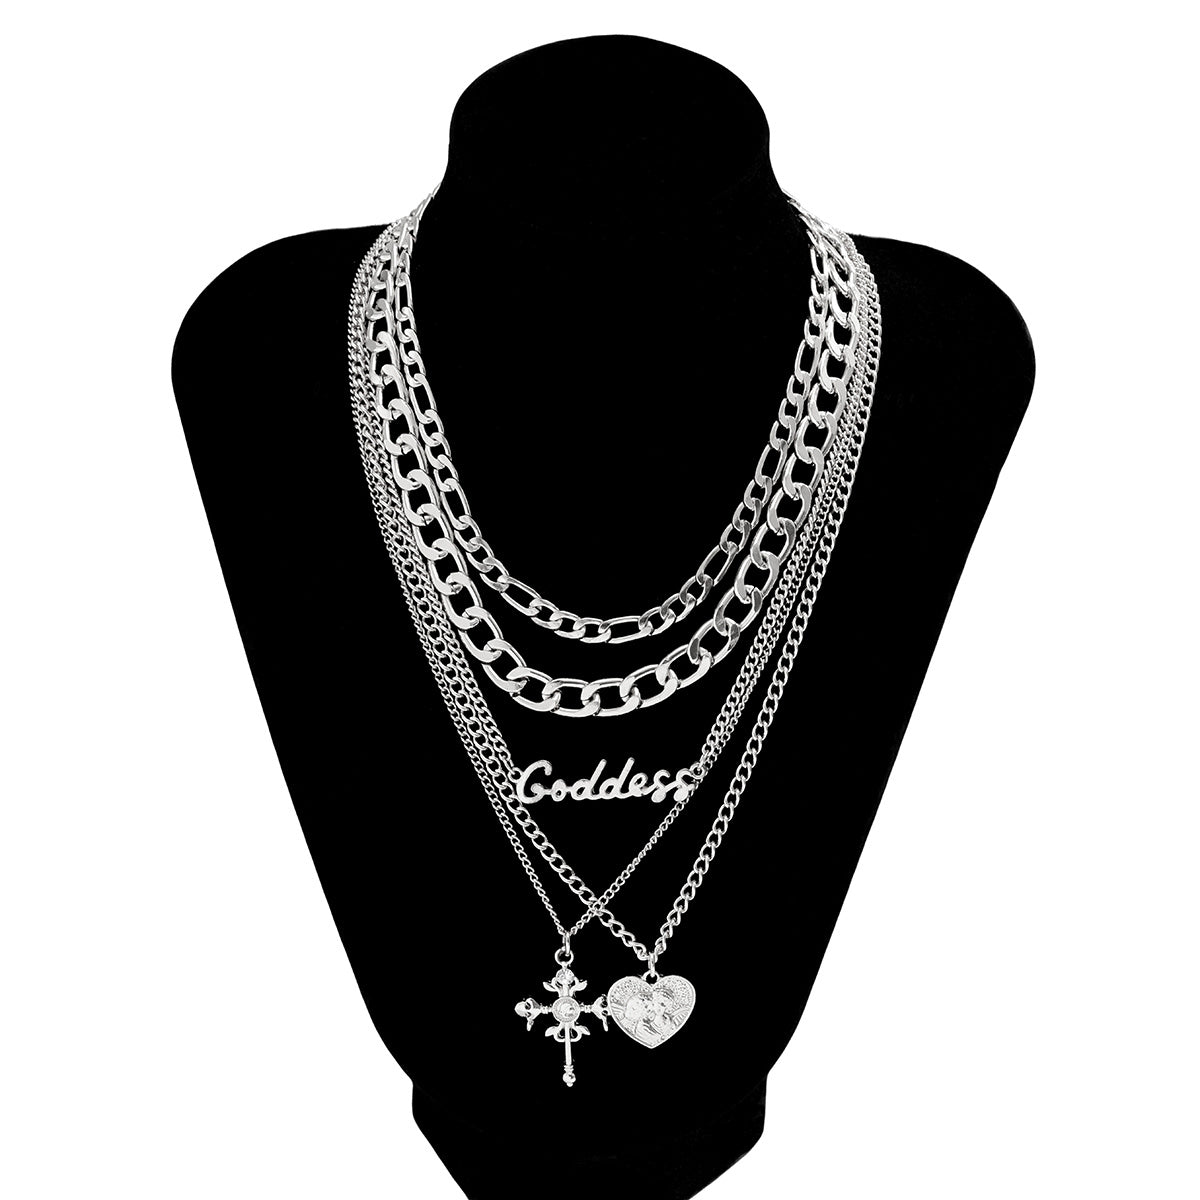 5 Pcs Vintage Stackable Necklace Heart & Cross Shape Pendant Adjustable Necklace Hip Hop Jewelry Set